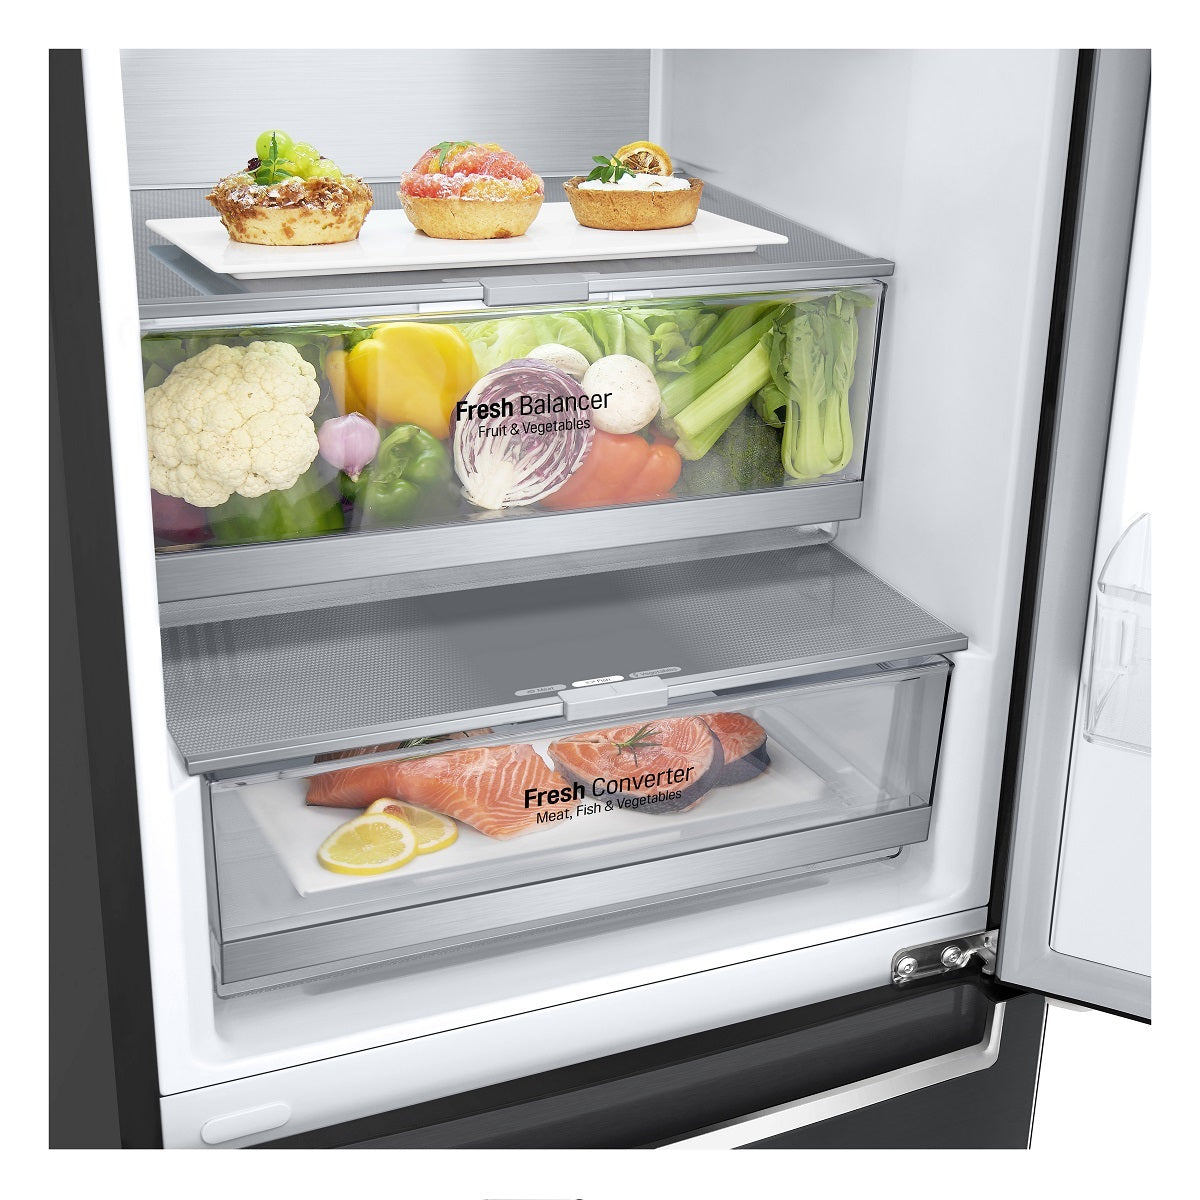 Kombinovaná chladnička s mrazničkou dole LG GBB92MCB2P